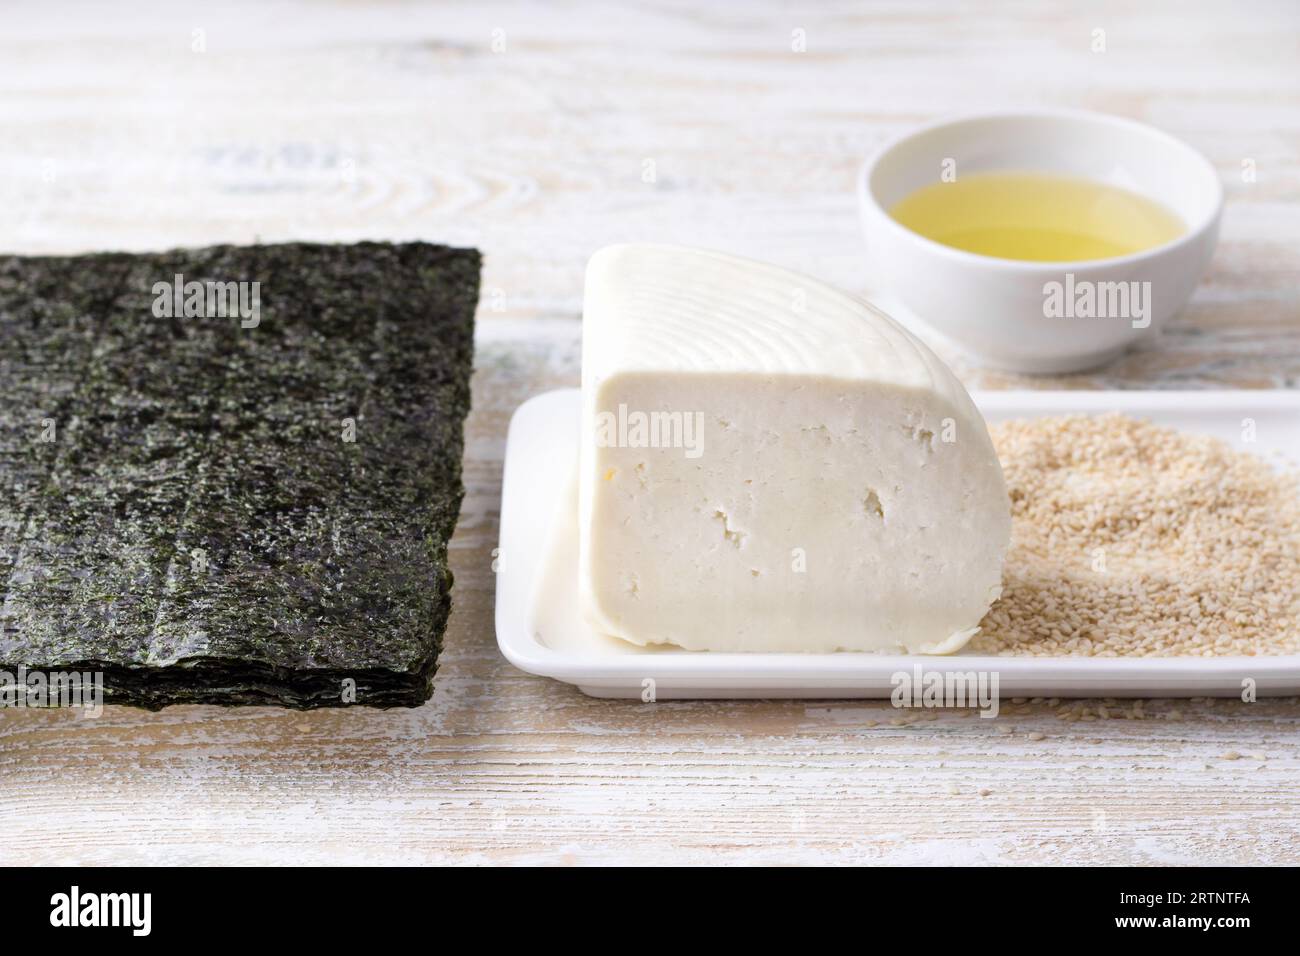 Frischkäse, Nori, Sesamsamen und Pflanzenöl – Zutaten für die Zubereitung eines köstlichen vegetarischen Gerichts. Stockfoto